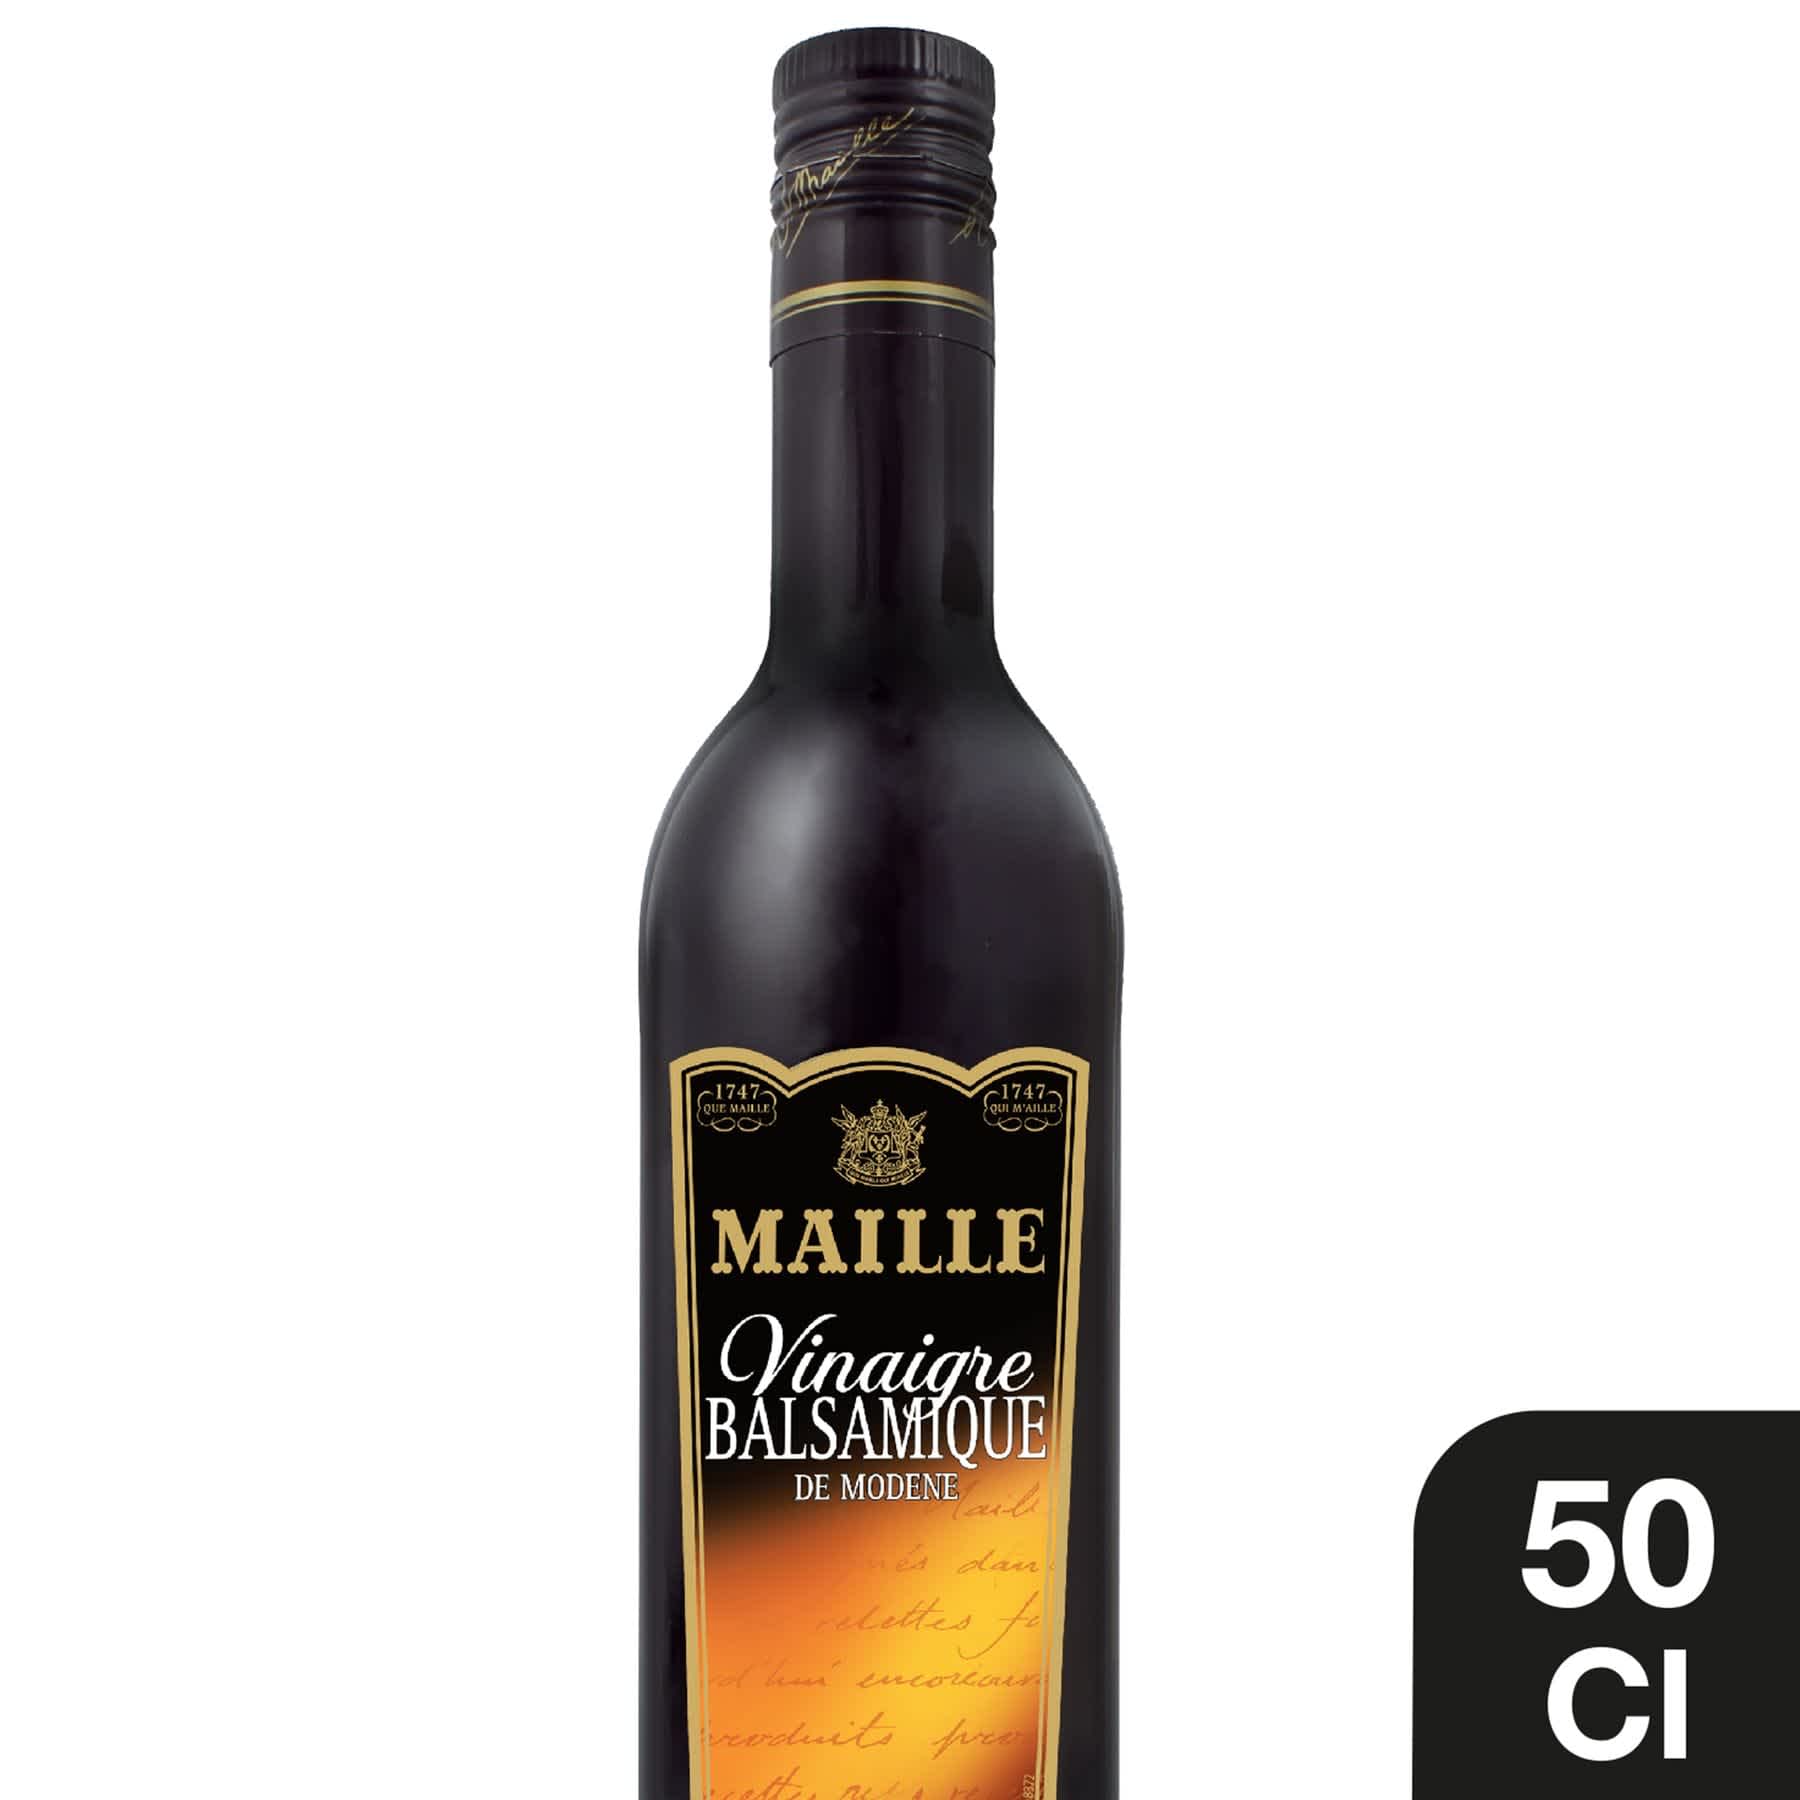 Maille - Vinaigre Balsamique de Modène 50 cl